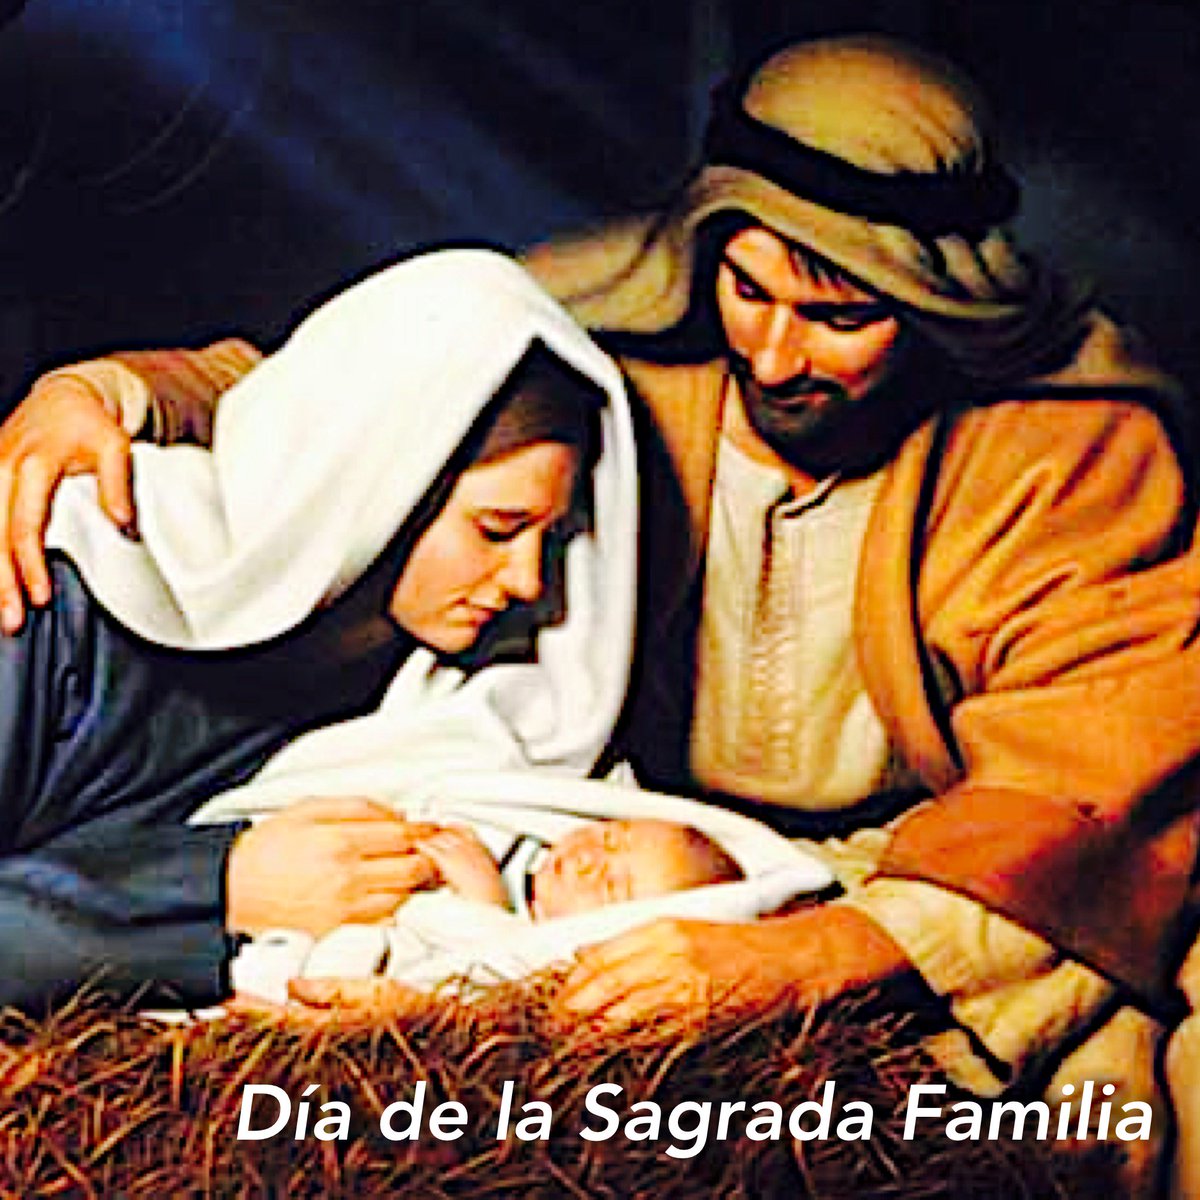 ¡feliz día de la sagrada familia! que en nuestros hogares venezolanos